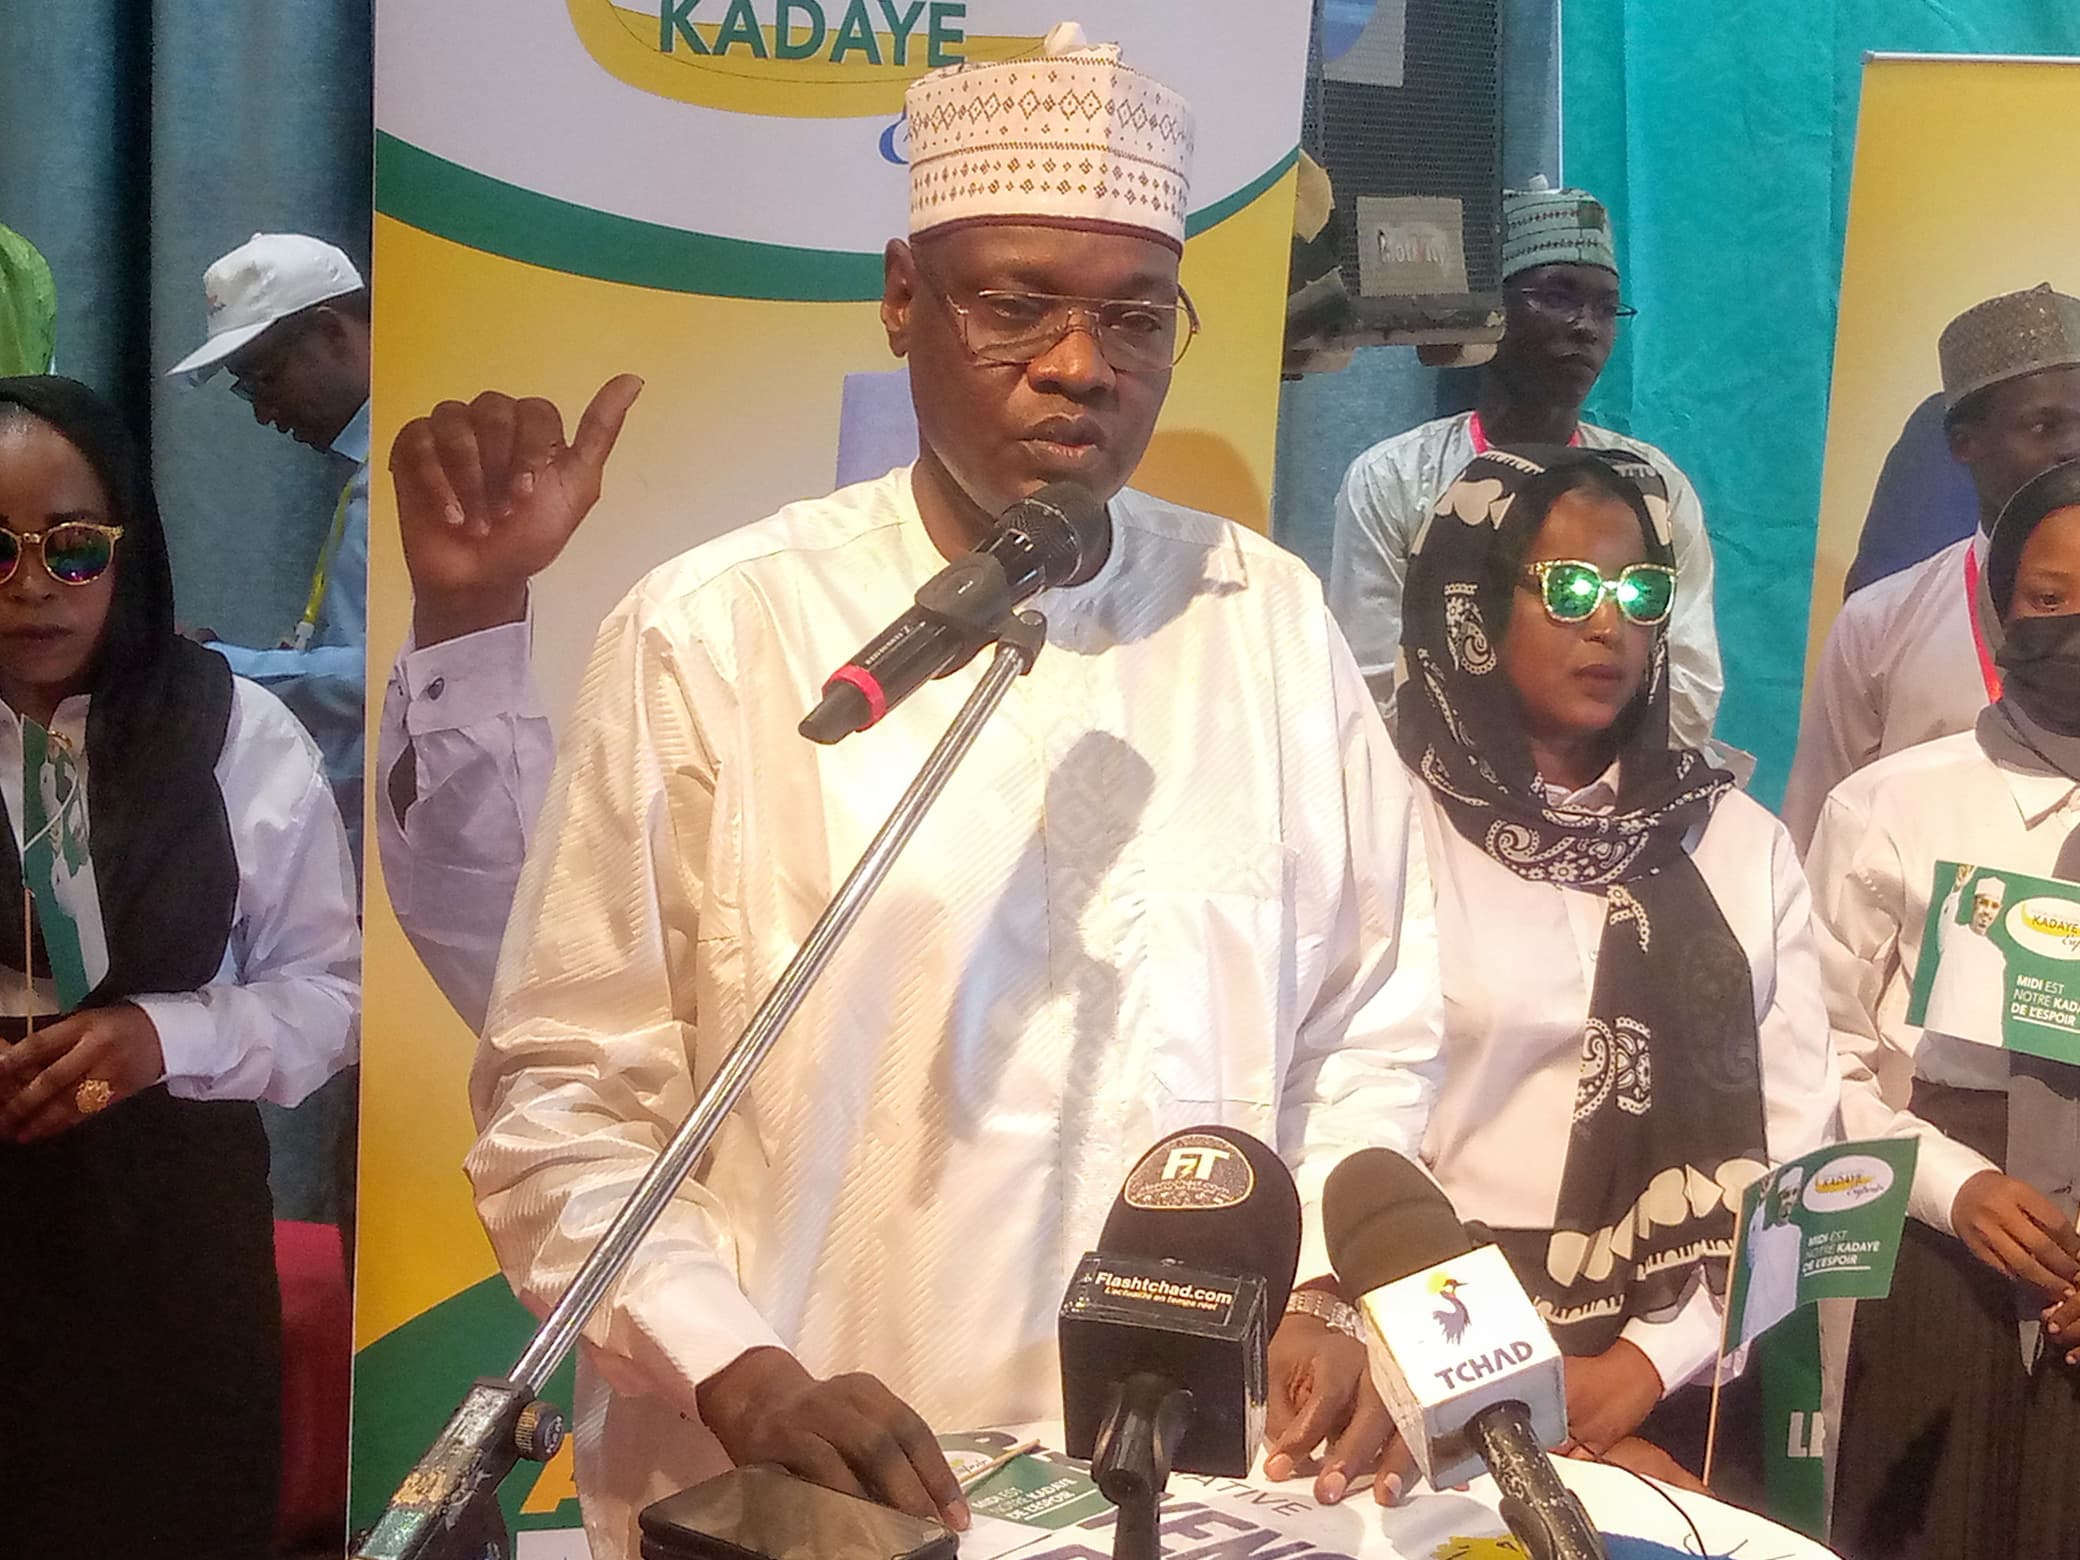 Tchad : le bureau de soutien 'Kadaye Espoir' se mobilise pour la victoire de Mahamat Idriss Déby